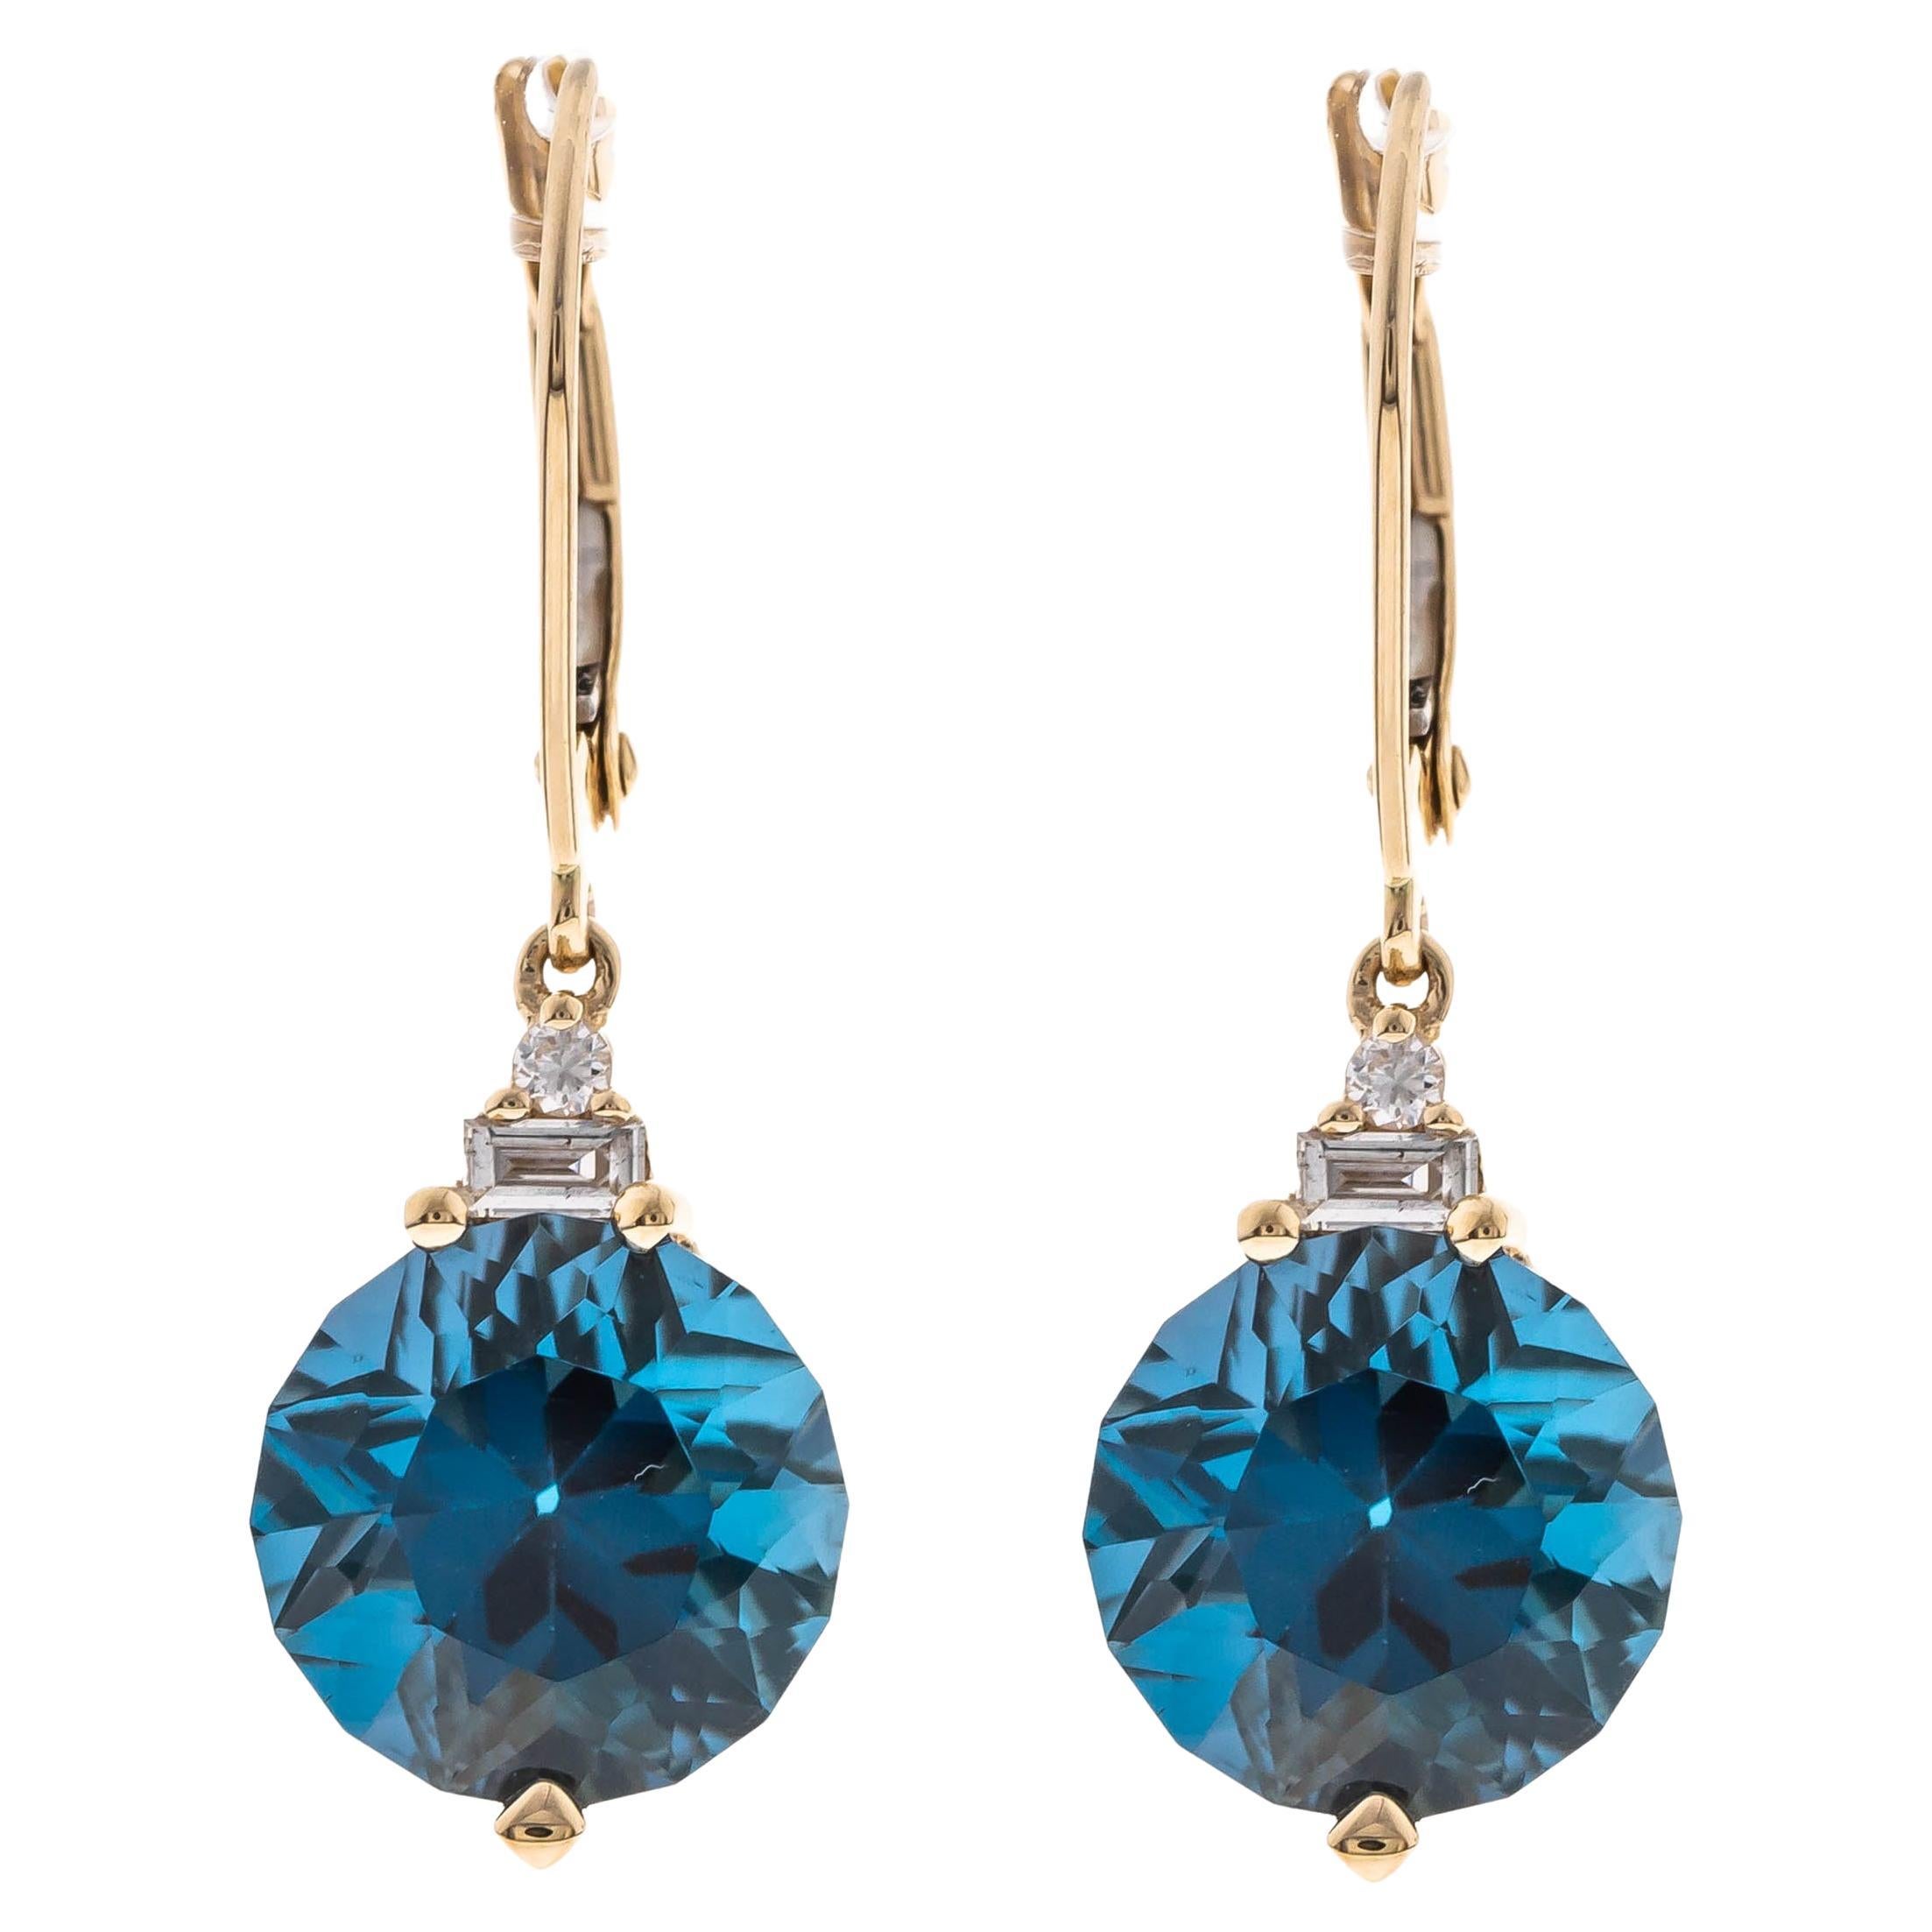 6.27 Carat Fancy-Cut London Blue Topaz Diamond Accents 14K Yellow Gold Earring For Sale